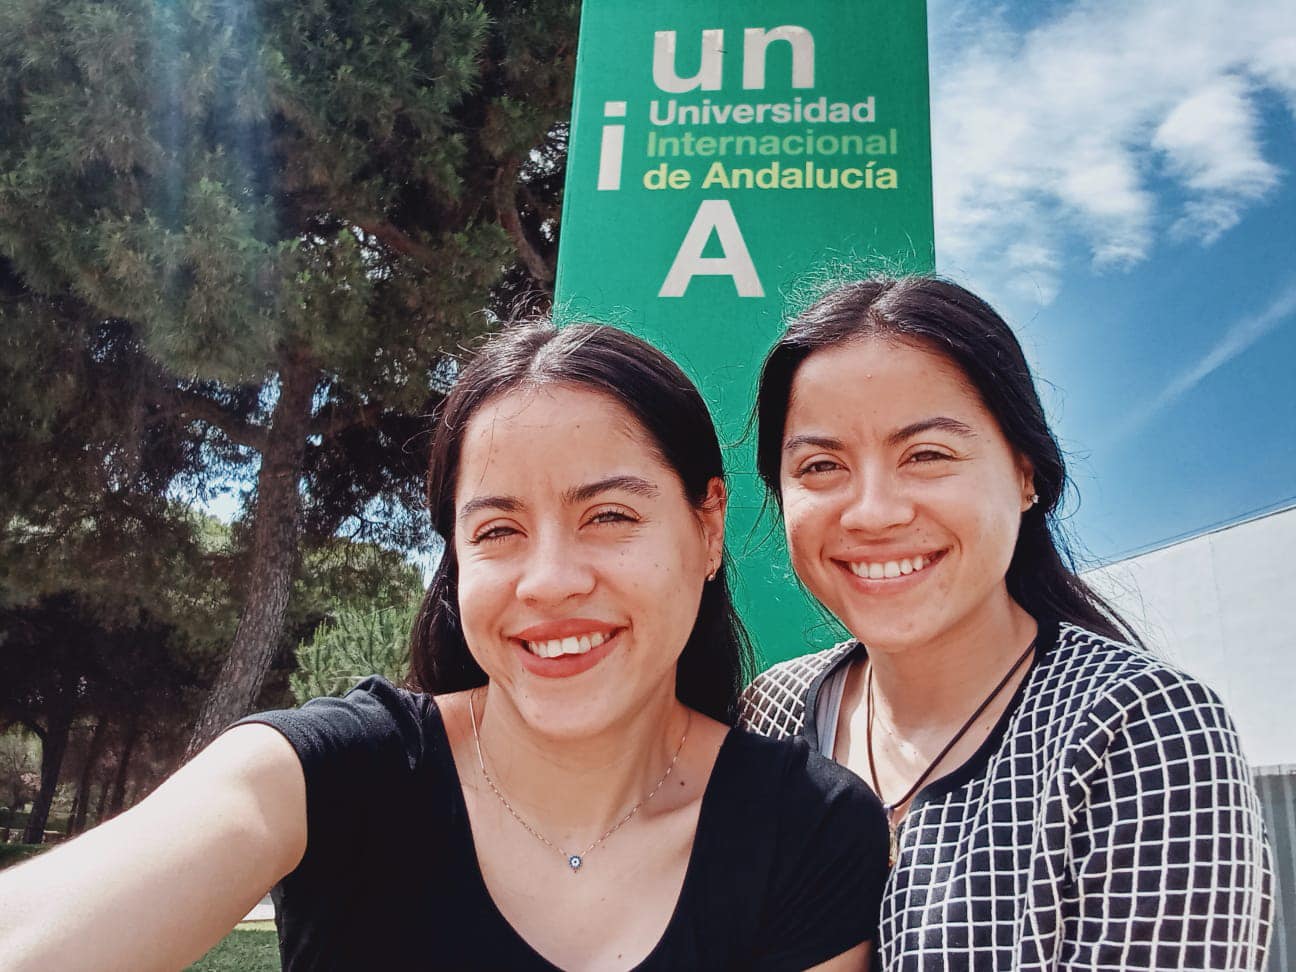 Gemelas hondureñas reciben beca en la Universidad Internacional de Andalucía